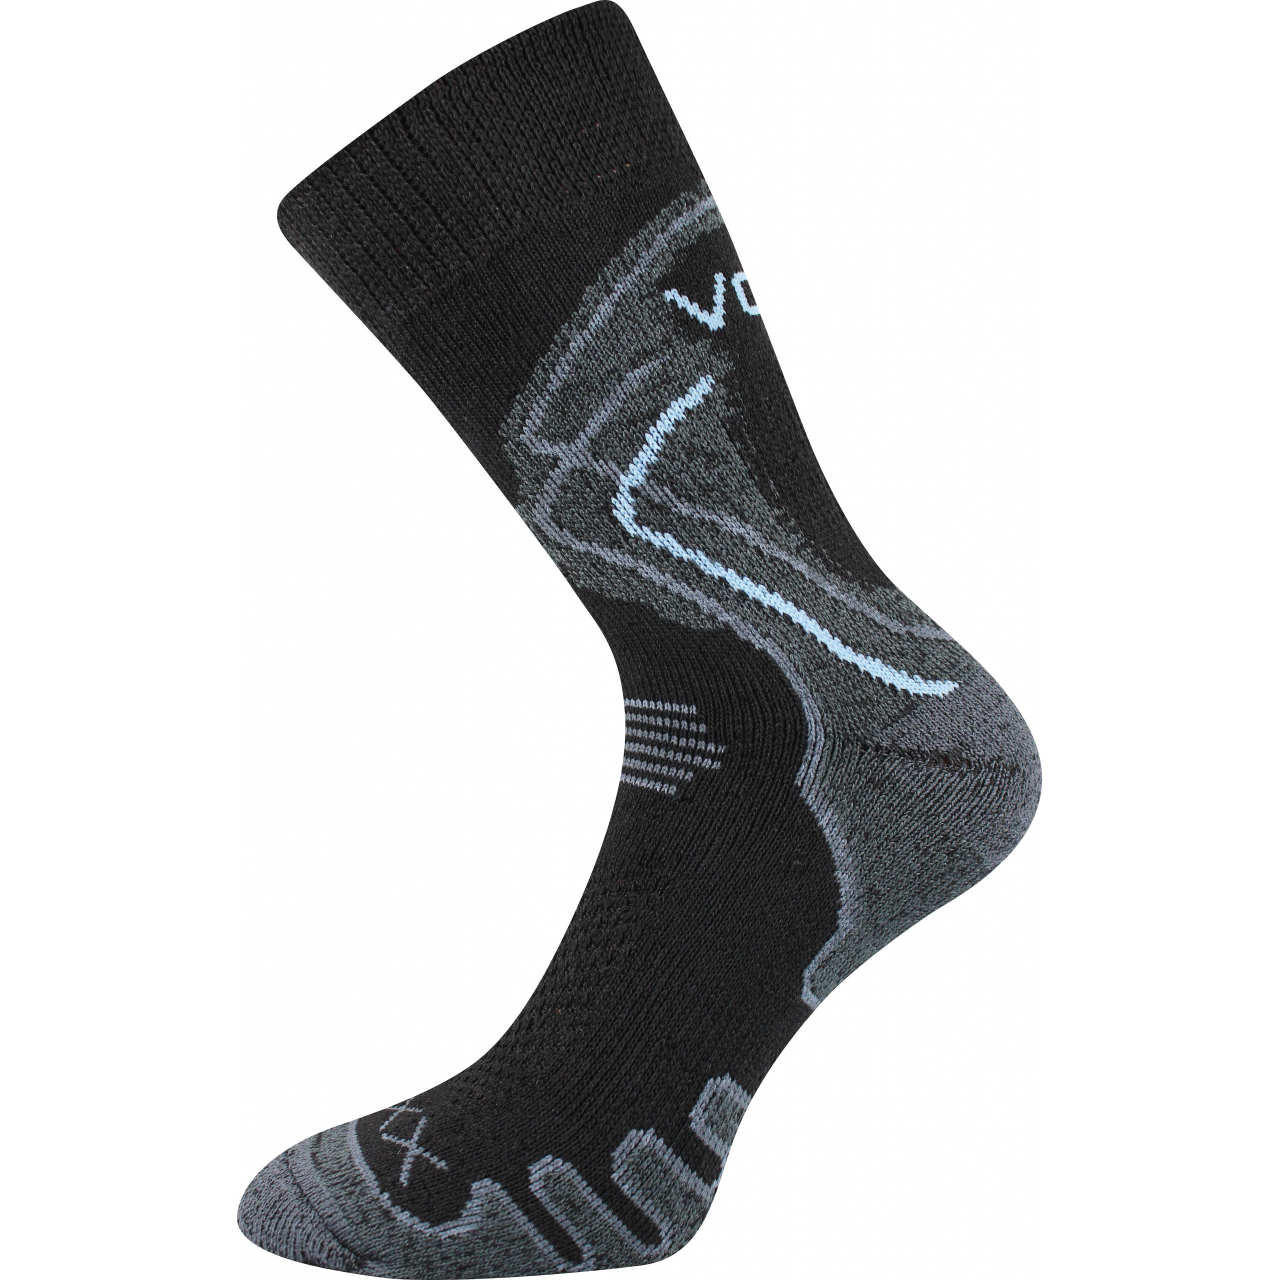 Ponožky trekingové unisex Voxx Limit III - černé, 43-46